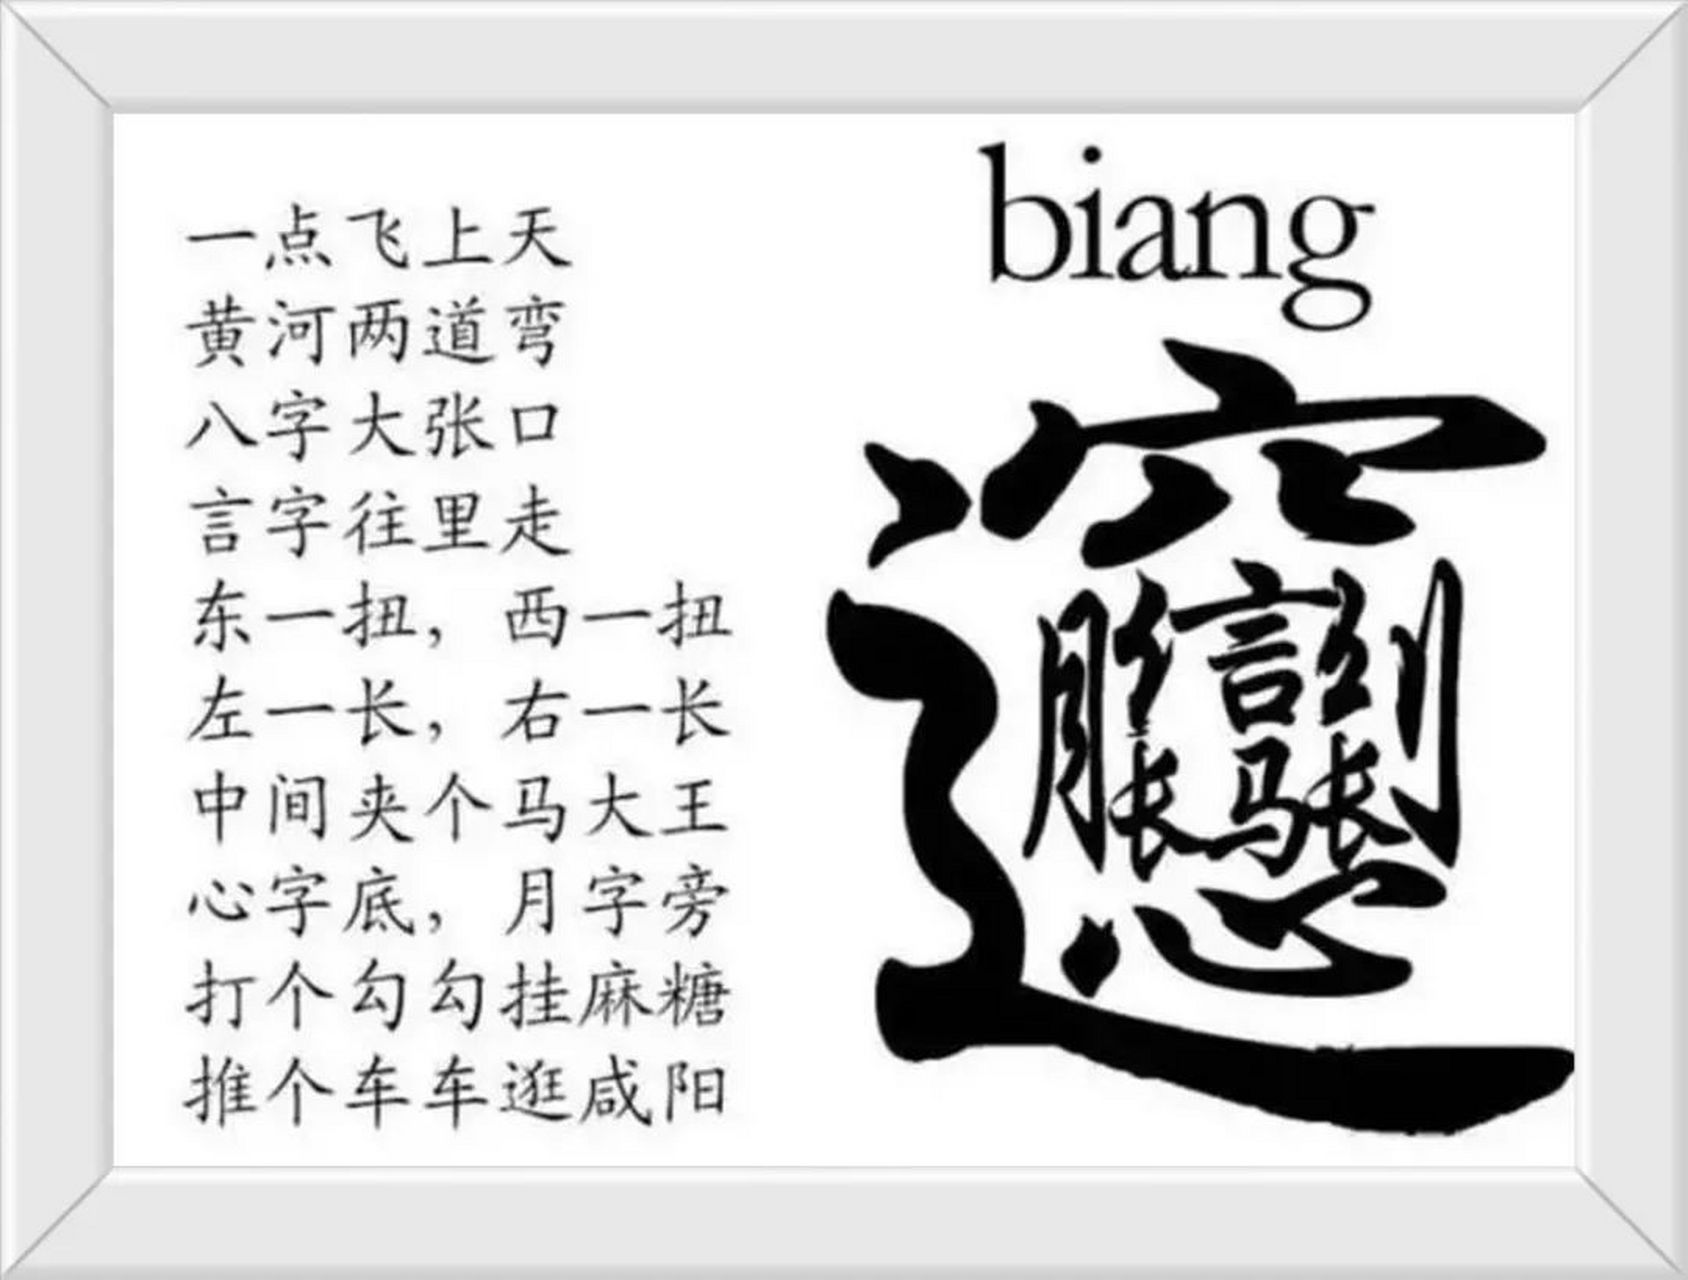 biangbiang面的biang字怎么写